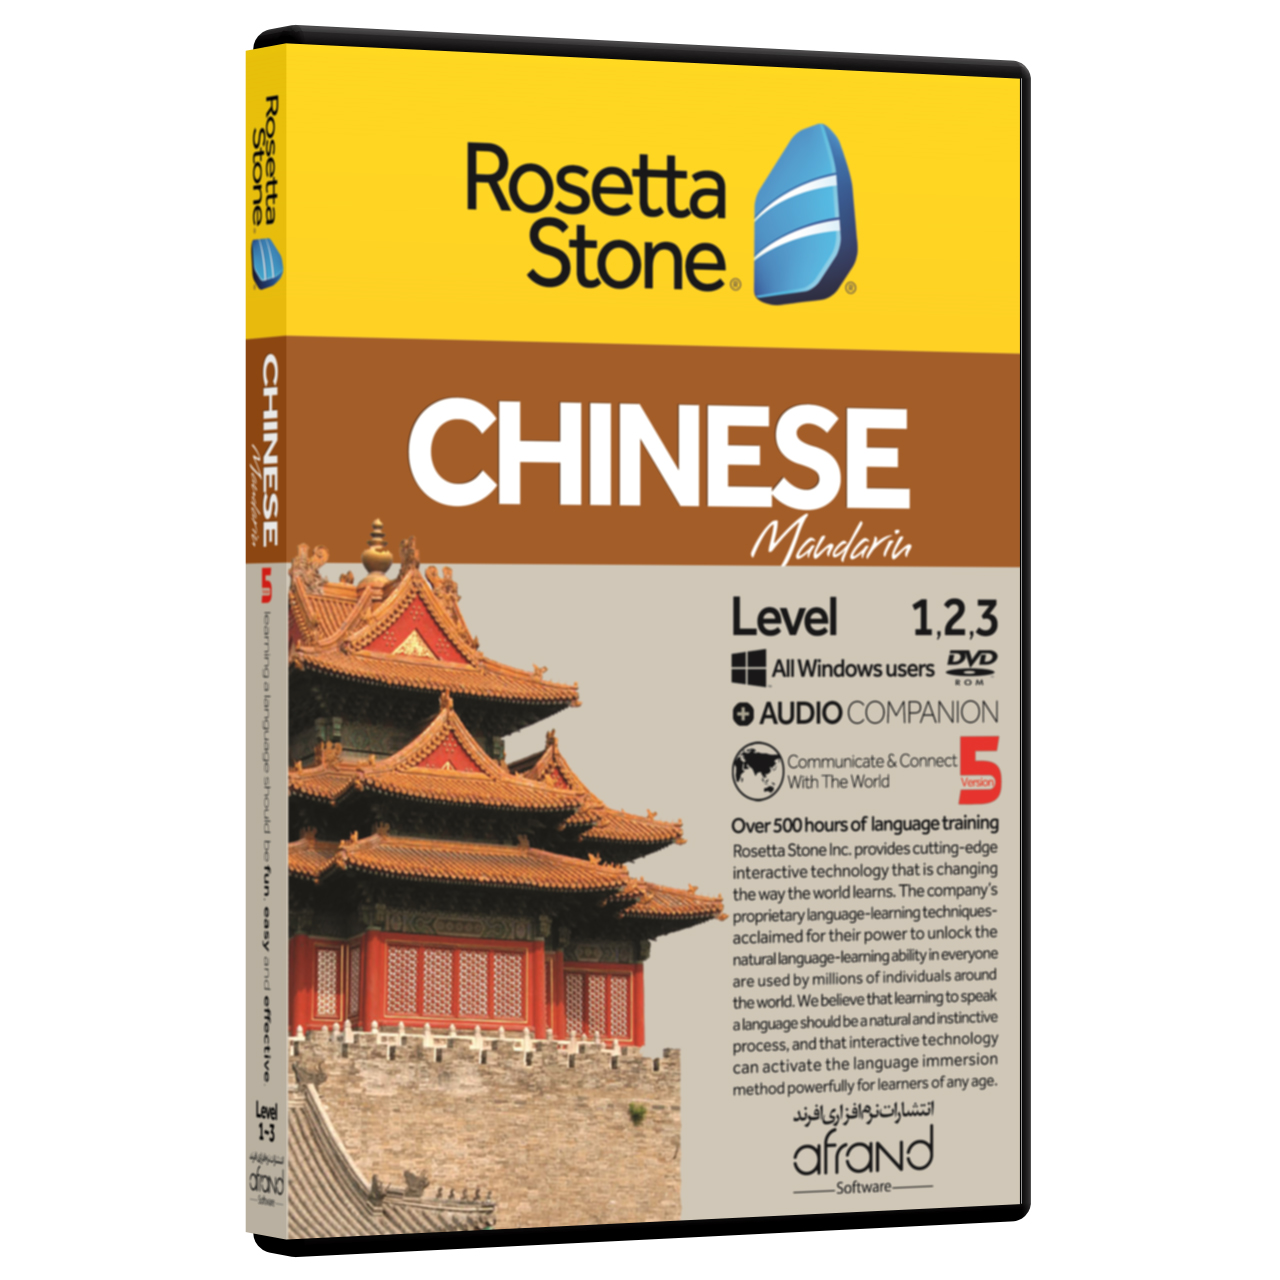 نرم افزار آموزش زبان چینی رزتا استون نسخه 5 انتشارات نرم افزاری افرند